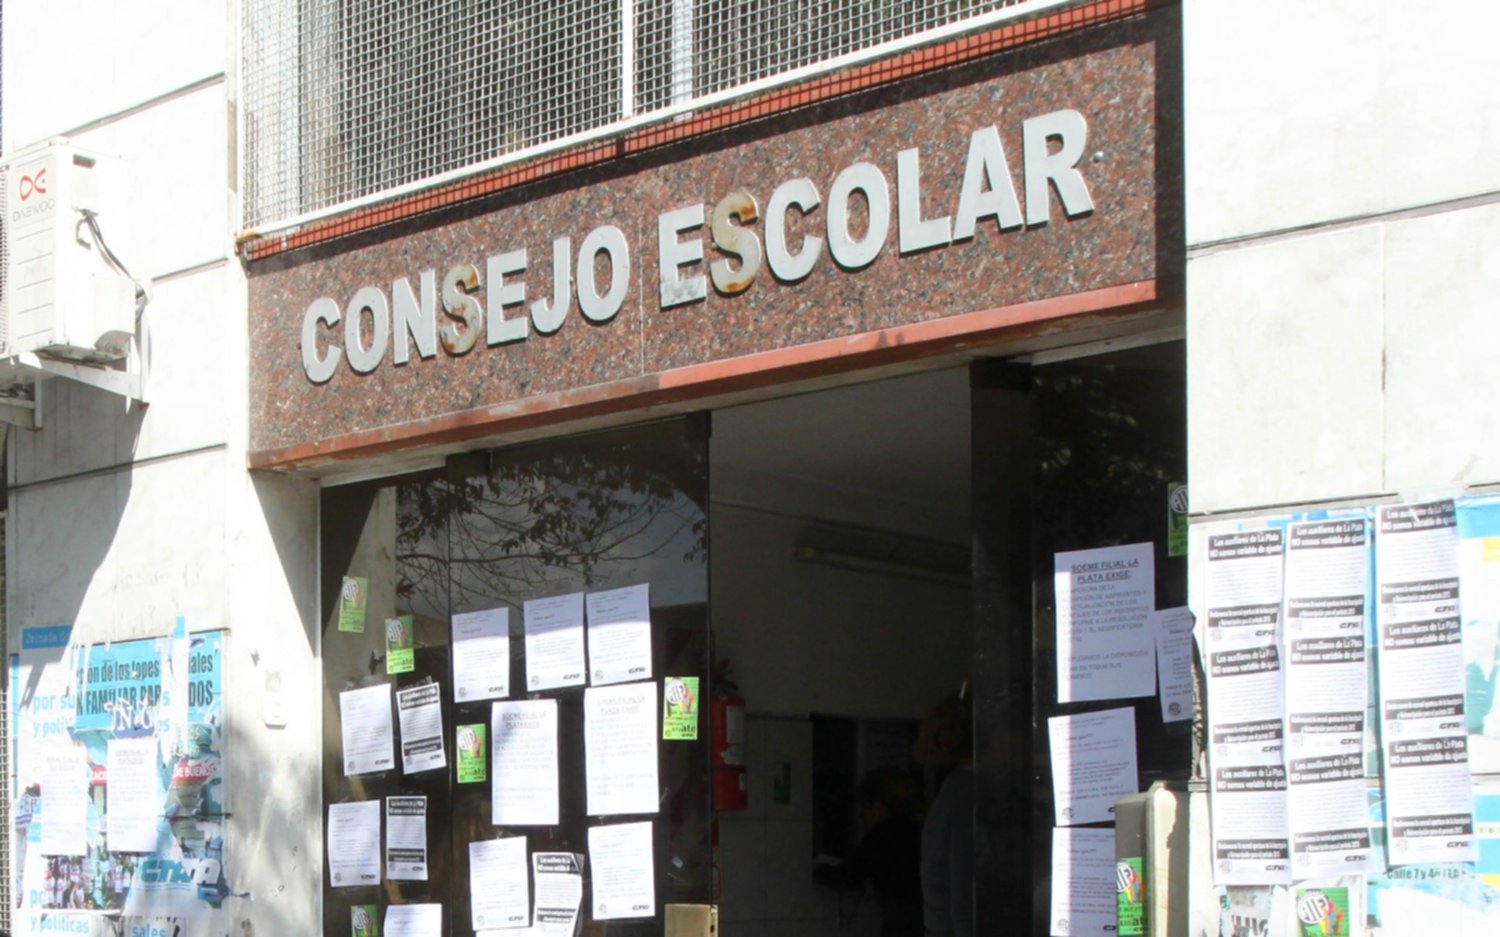 Tras la renuncia de la tesorera, se recalienta la polémica en el Consejo Escolar de La Plata